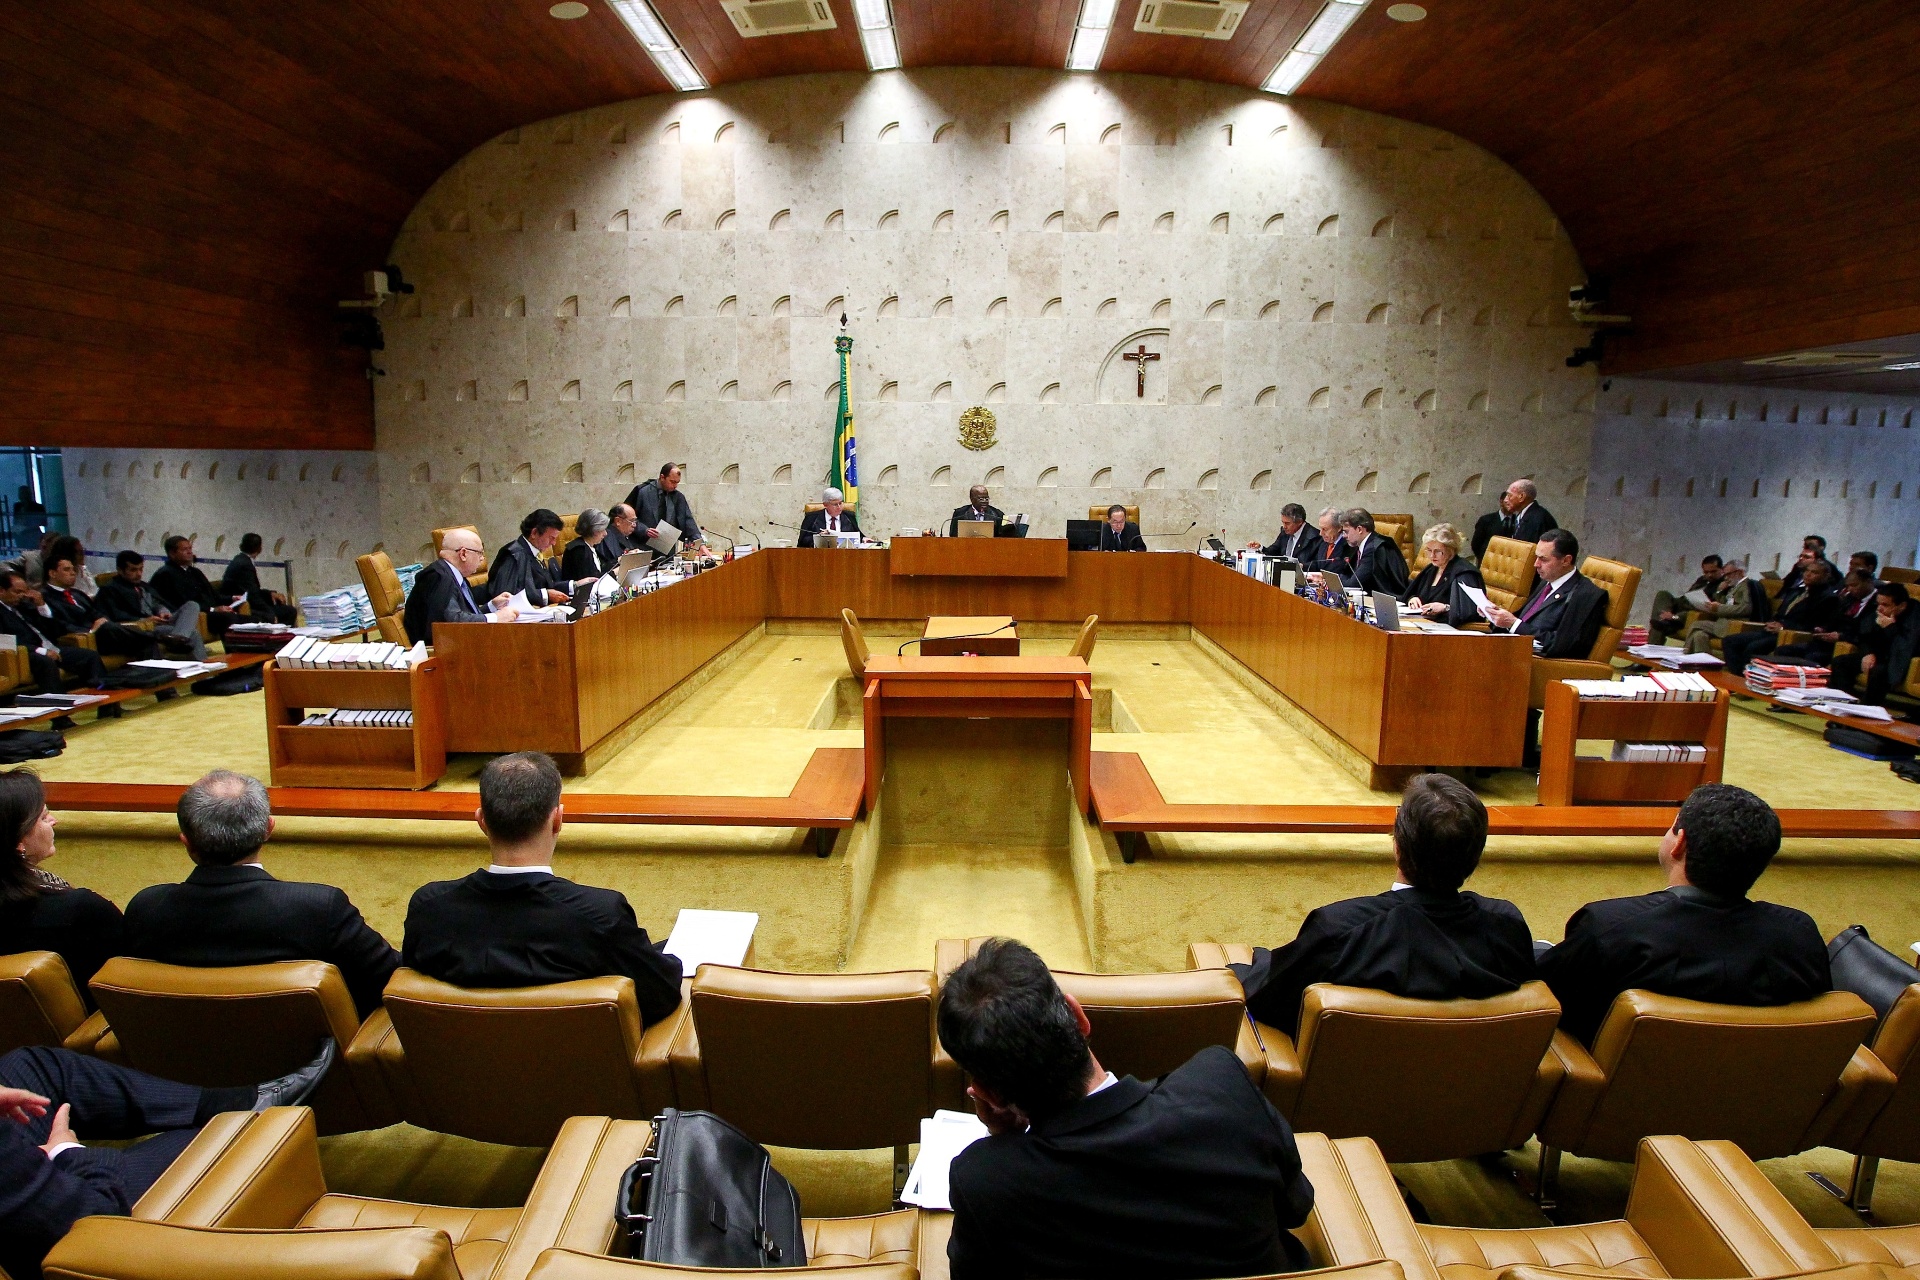  - 13fev2014---ministros-do-stf-supremo-tribunal-federal-participam-de-sessao-plenaria-em-brasilia-df-1392318238935_1920x1280